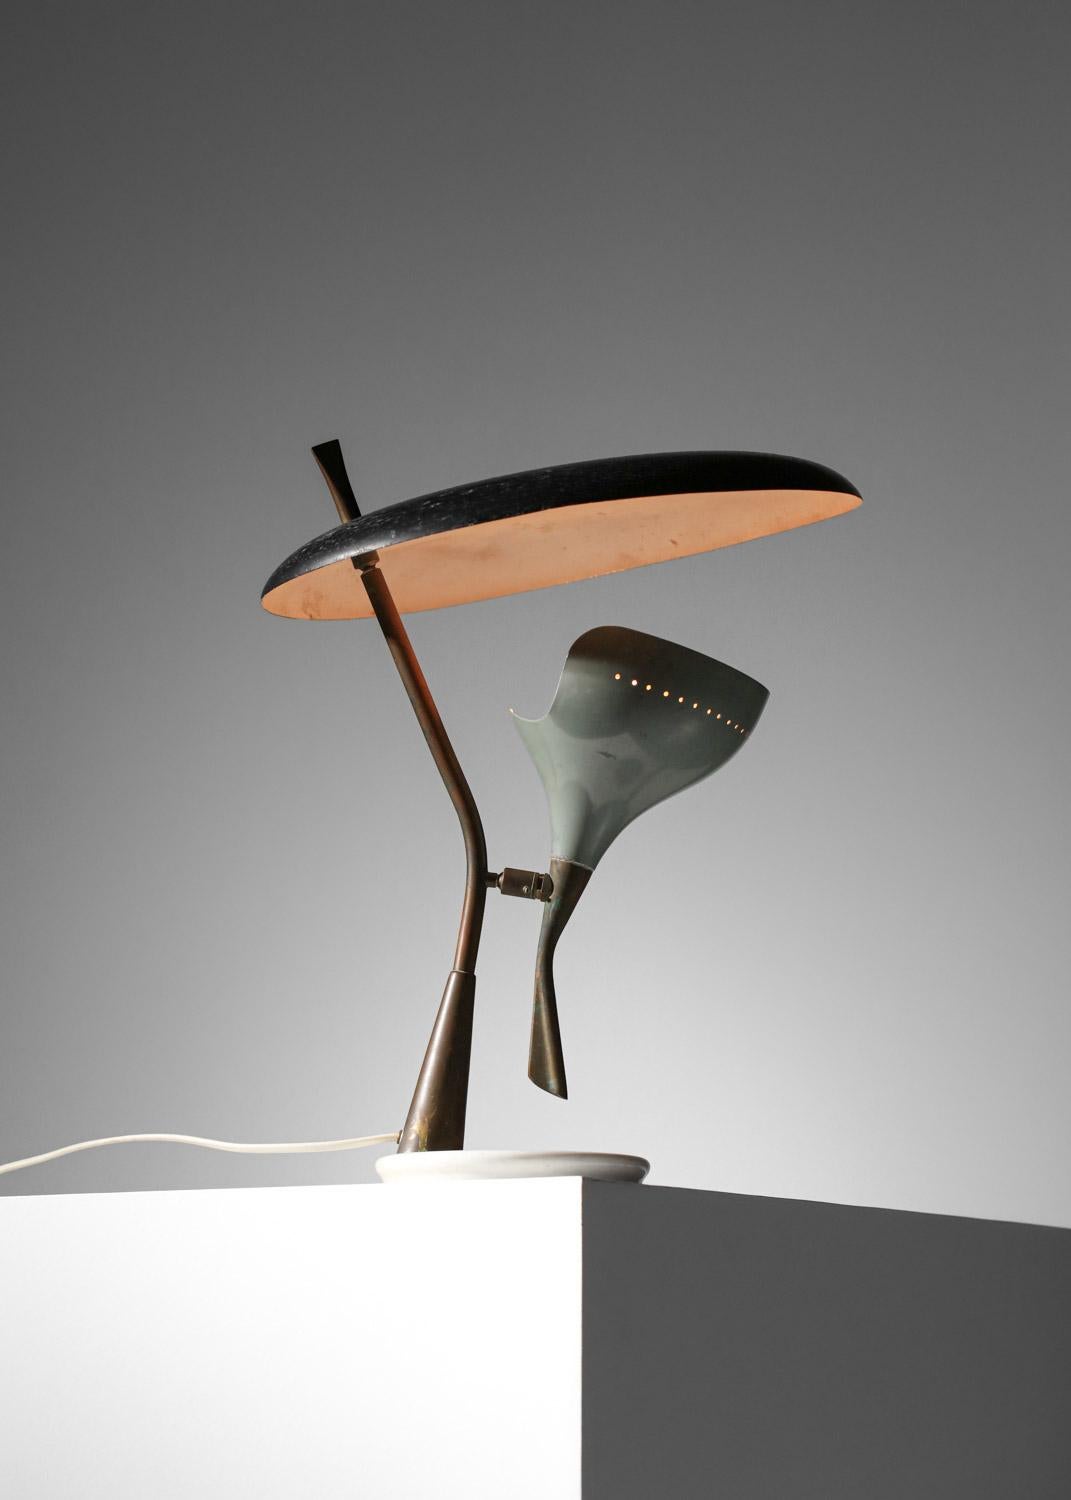 Laqué Lampe de table italienne stillux grise et noire des années 60  rare  en vente